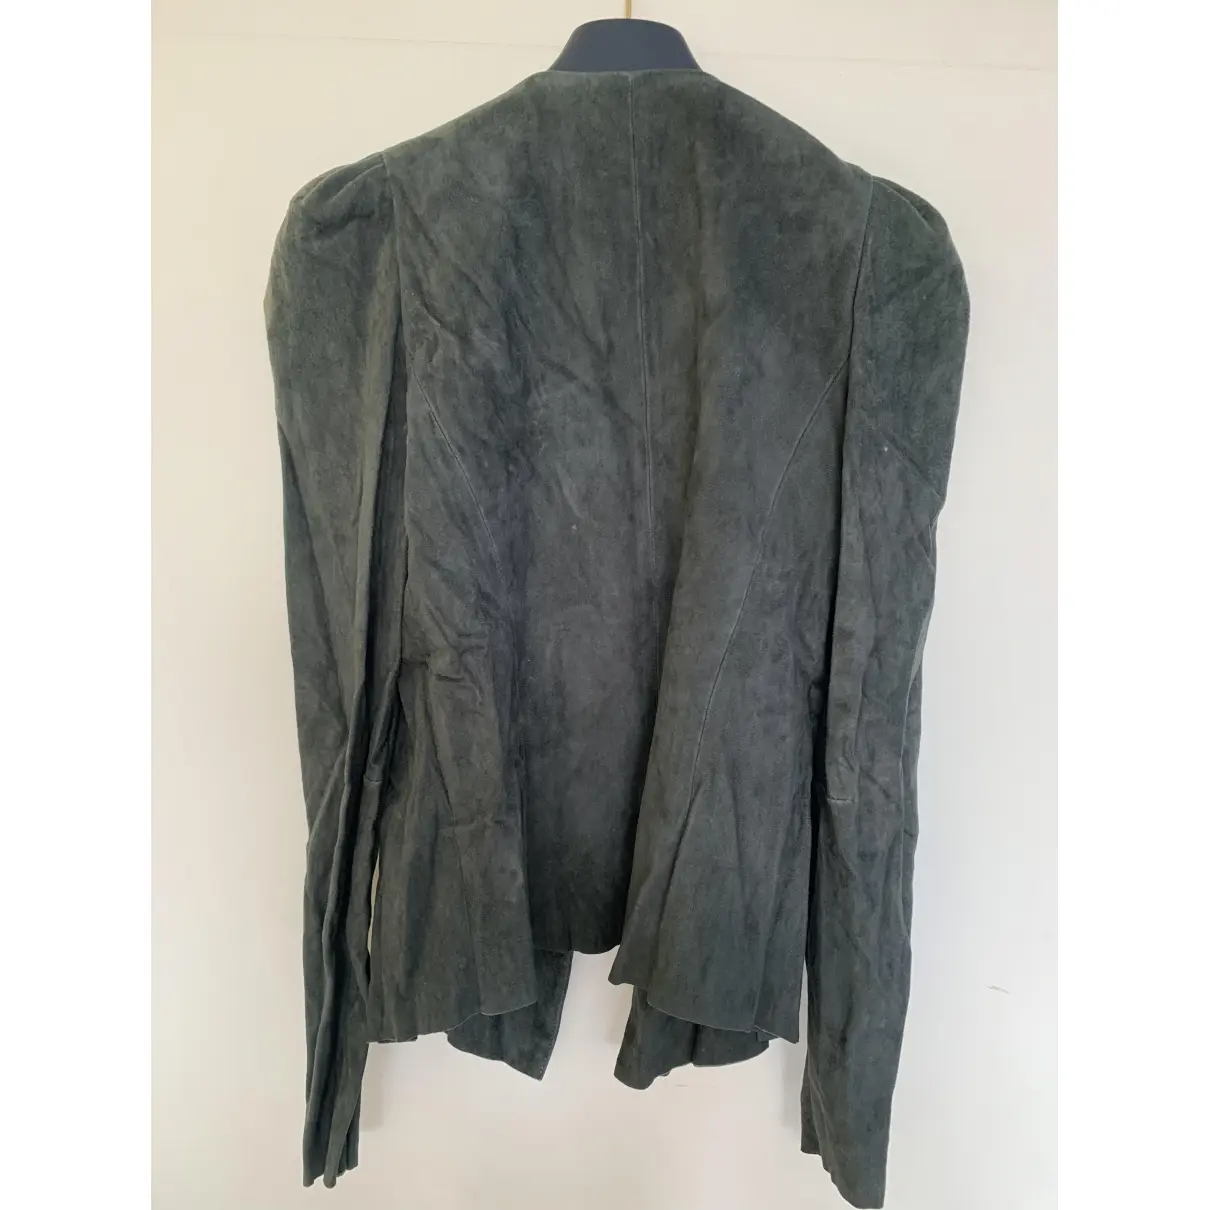 Buy Isabel Marant Leather jacket online